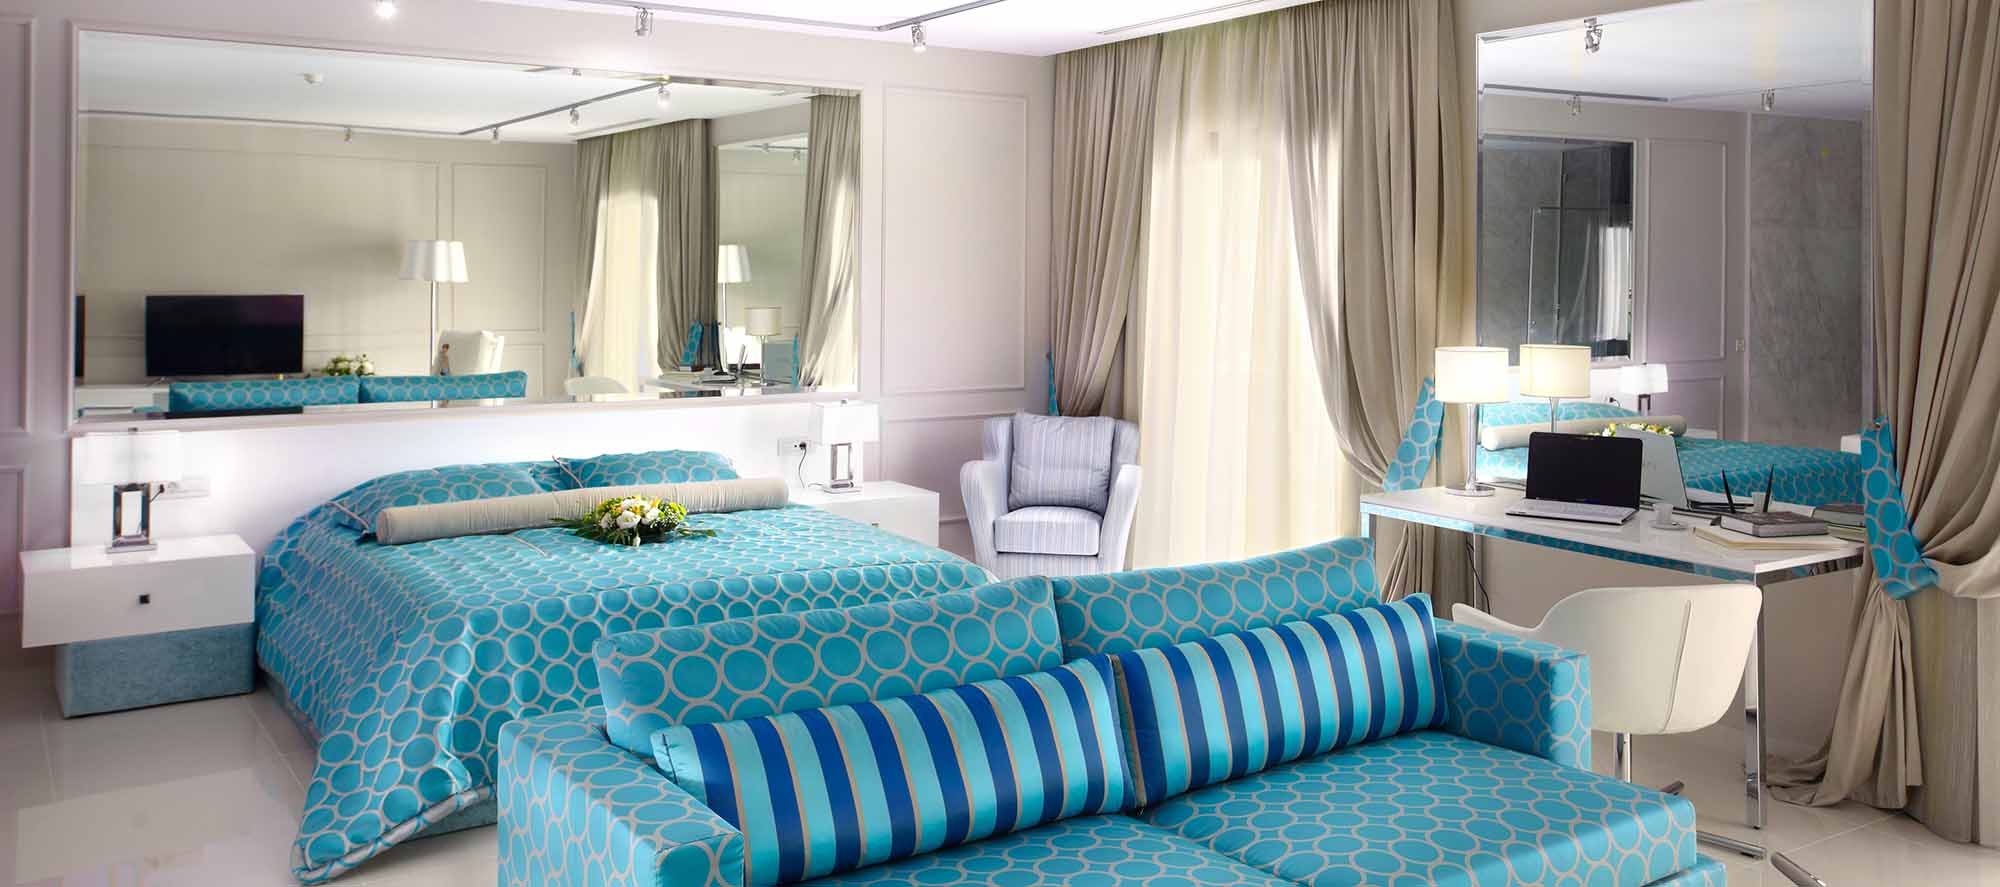 Tokyo suite bed